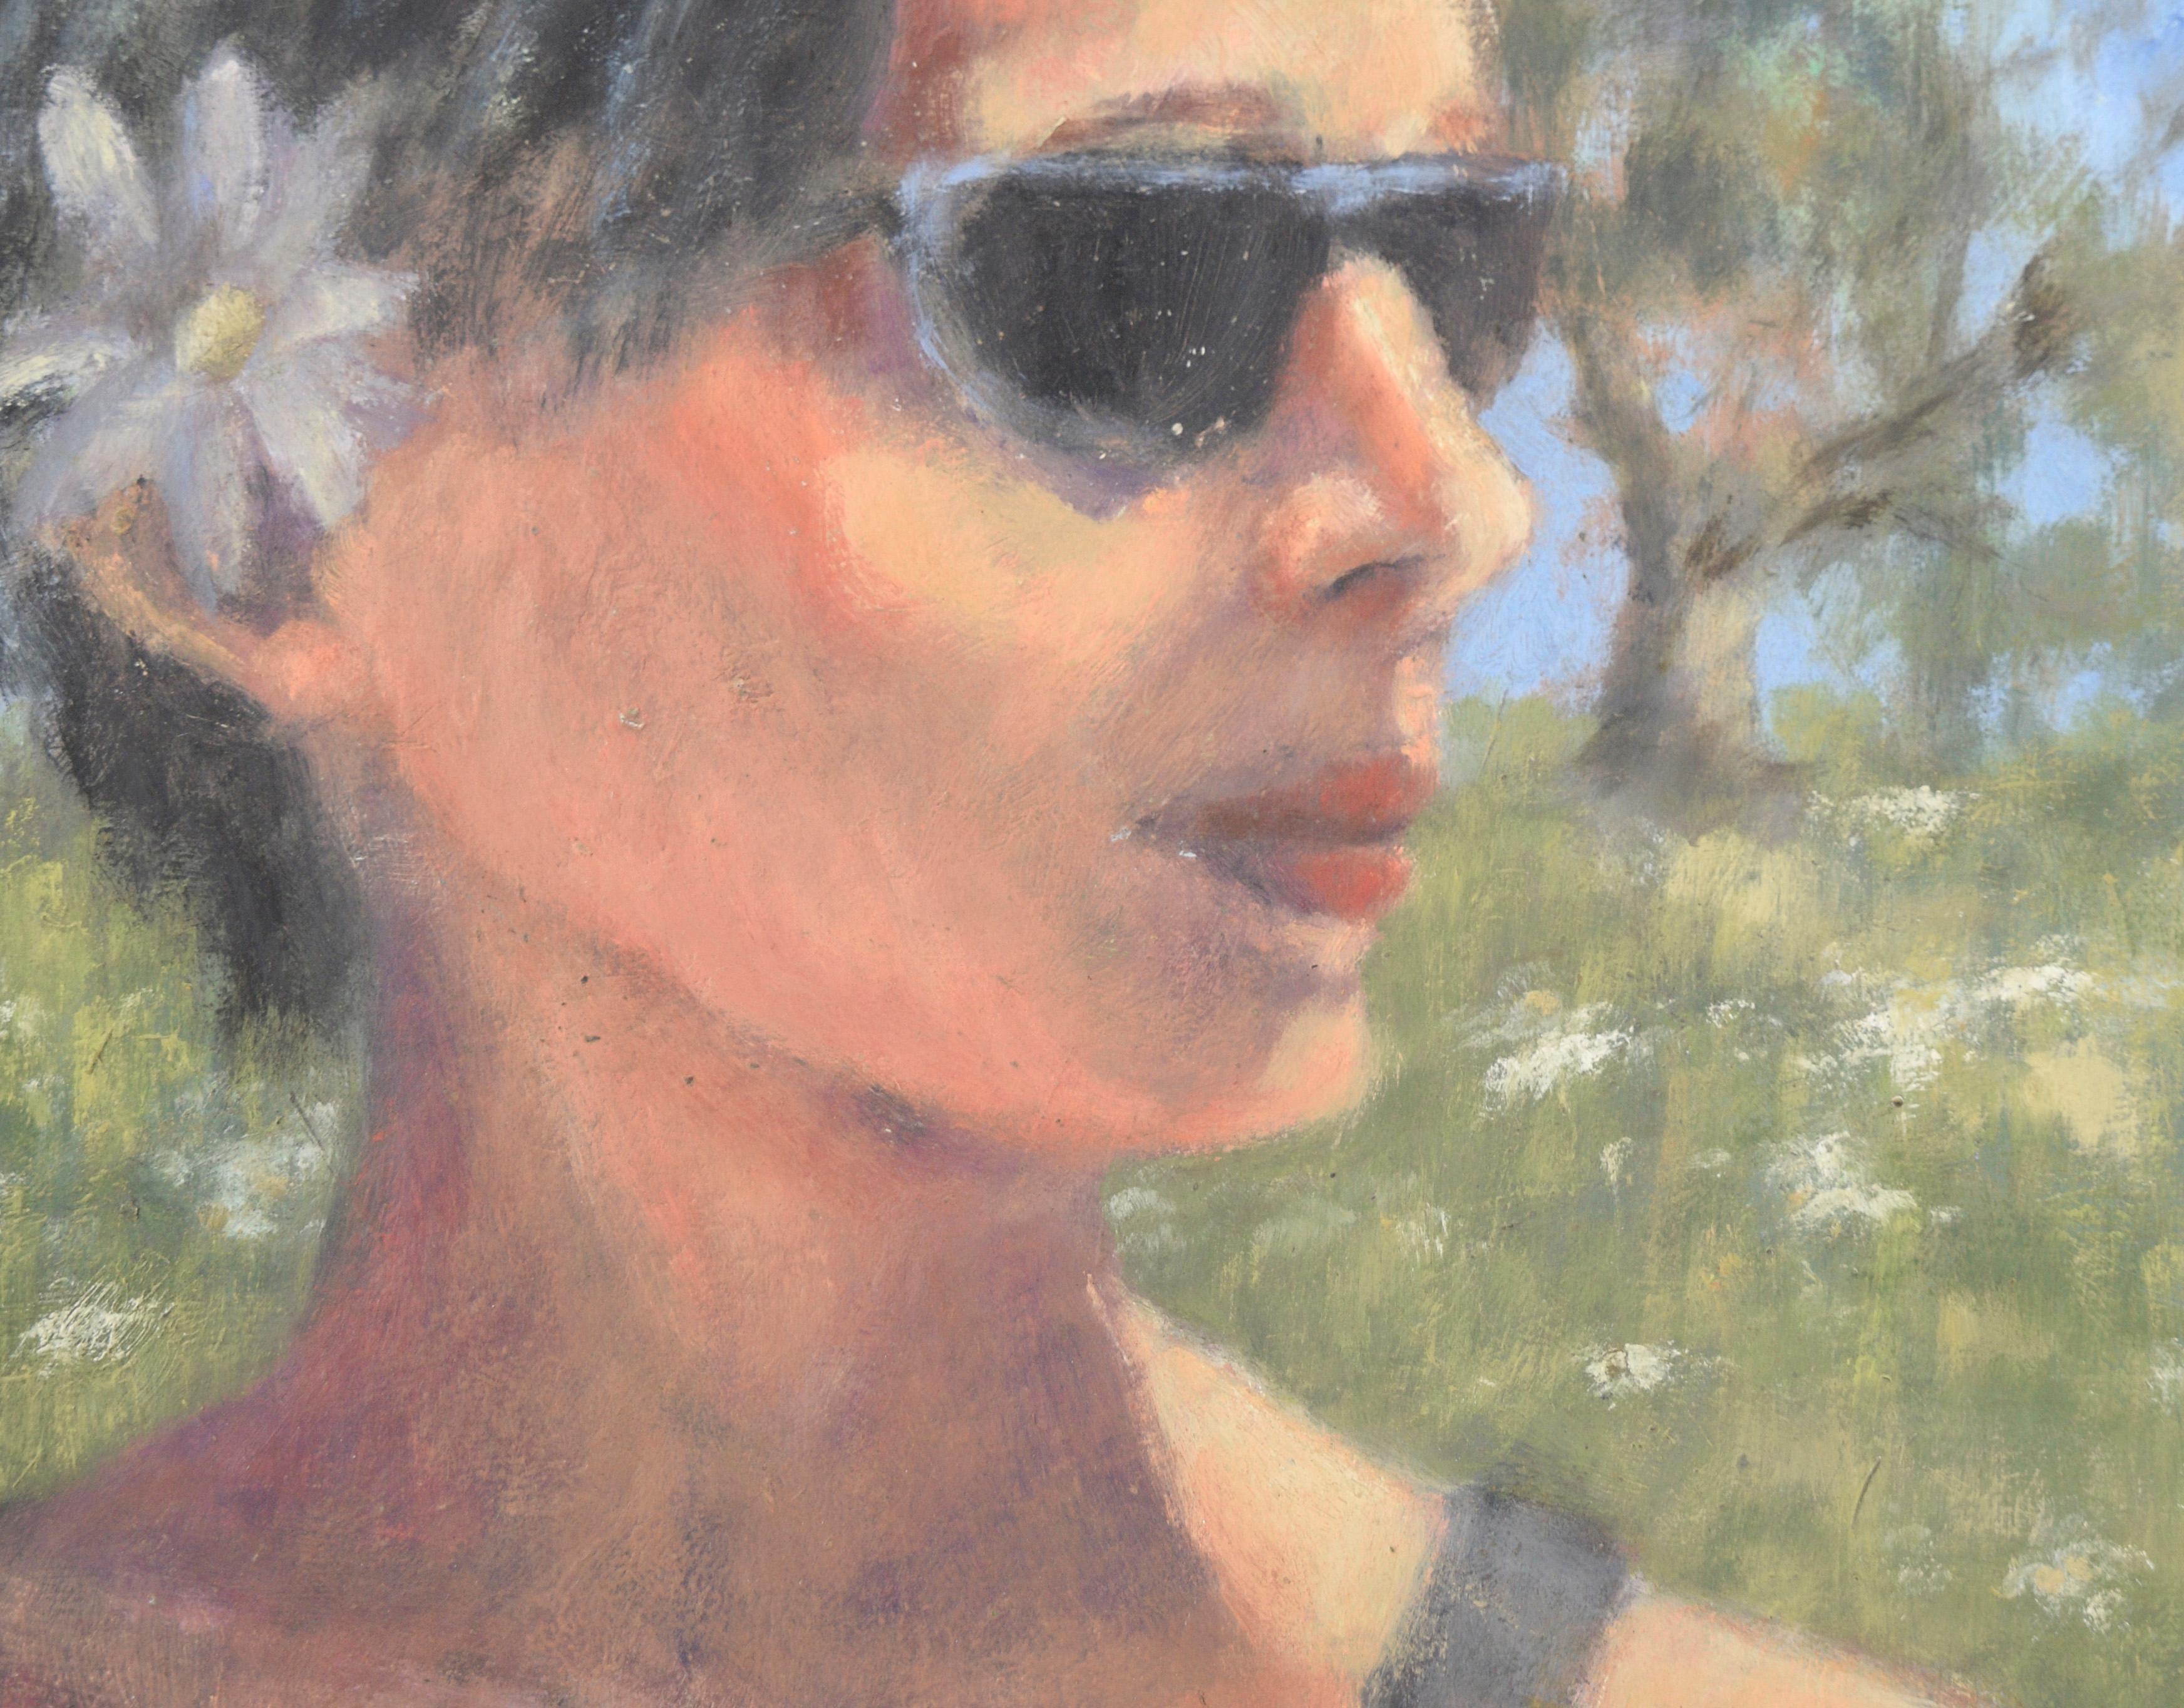 Porträt einer kalifornischen Frau mit Sonnenbrille in Acryl auf Masonit

Porträt einer Frau mit Sonnenbrille von einer unbekannten Künstlerin an der kalifornischen Küste, Maria Pavao Hadsell (Potugal/Amerikaner, 20. Jahrhundert). Eine Frau blickt